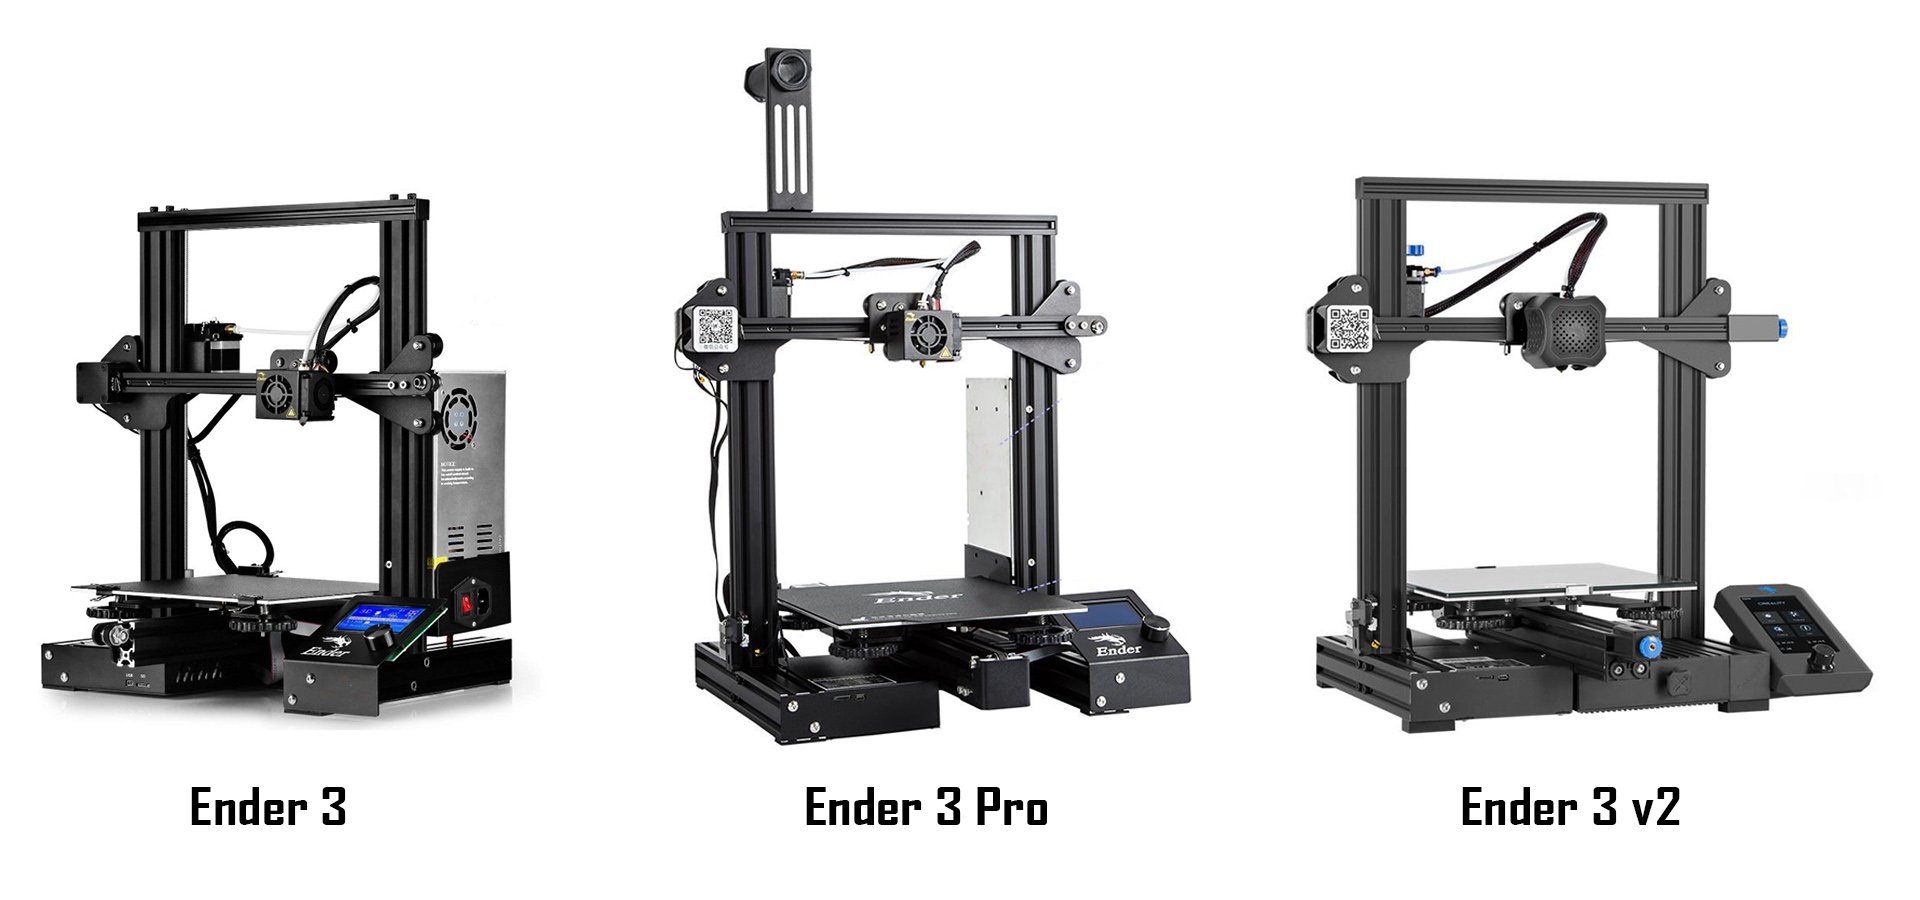 Comparison: Creality3D Ender-3 vs Ender-3 V2